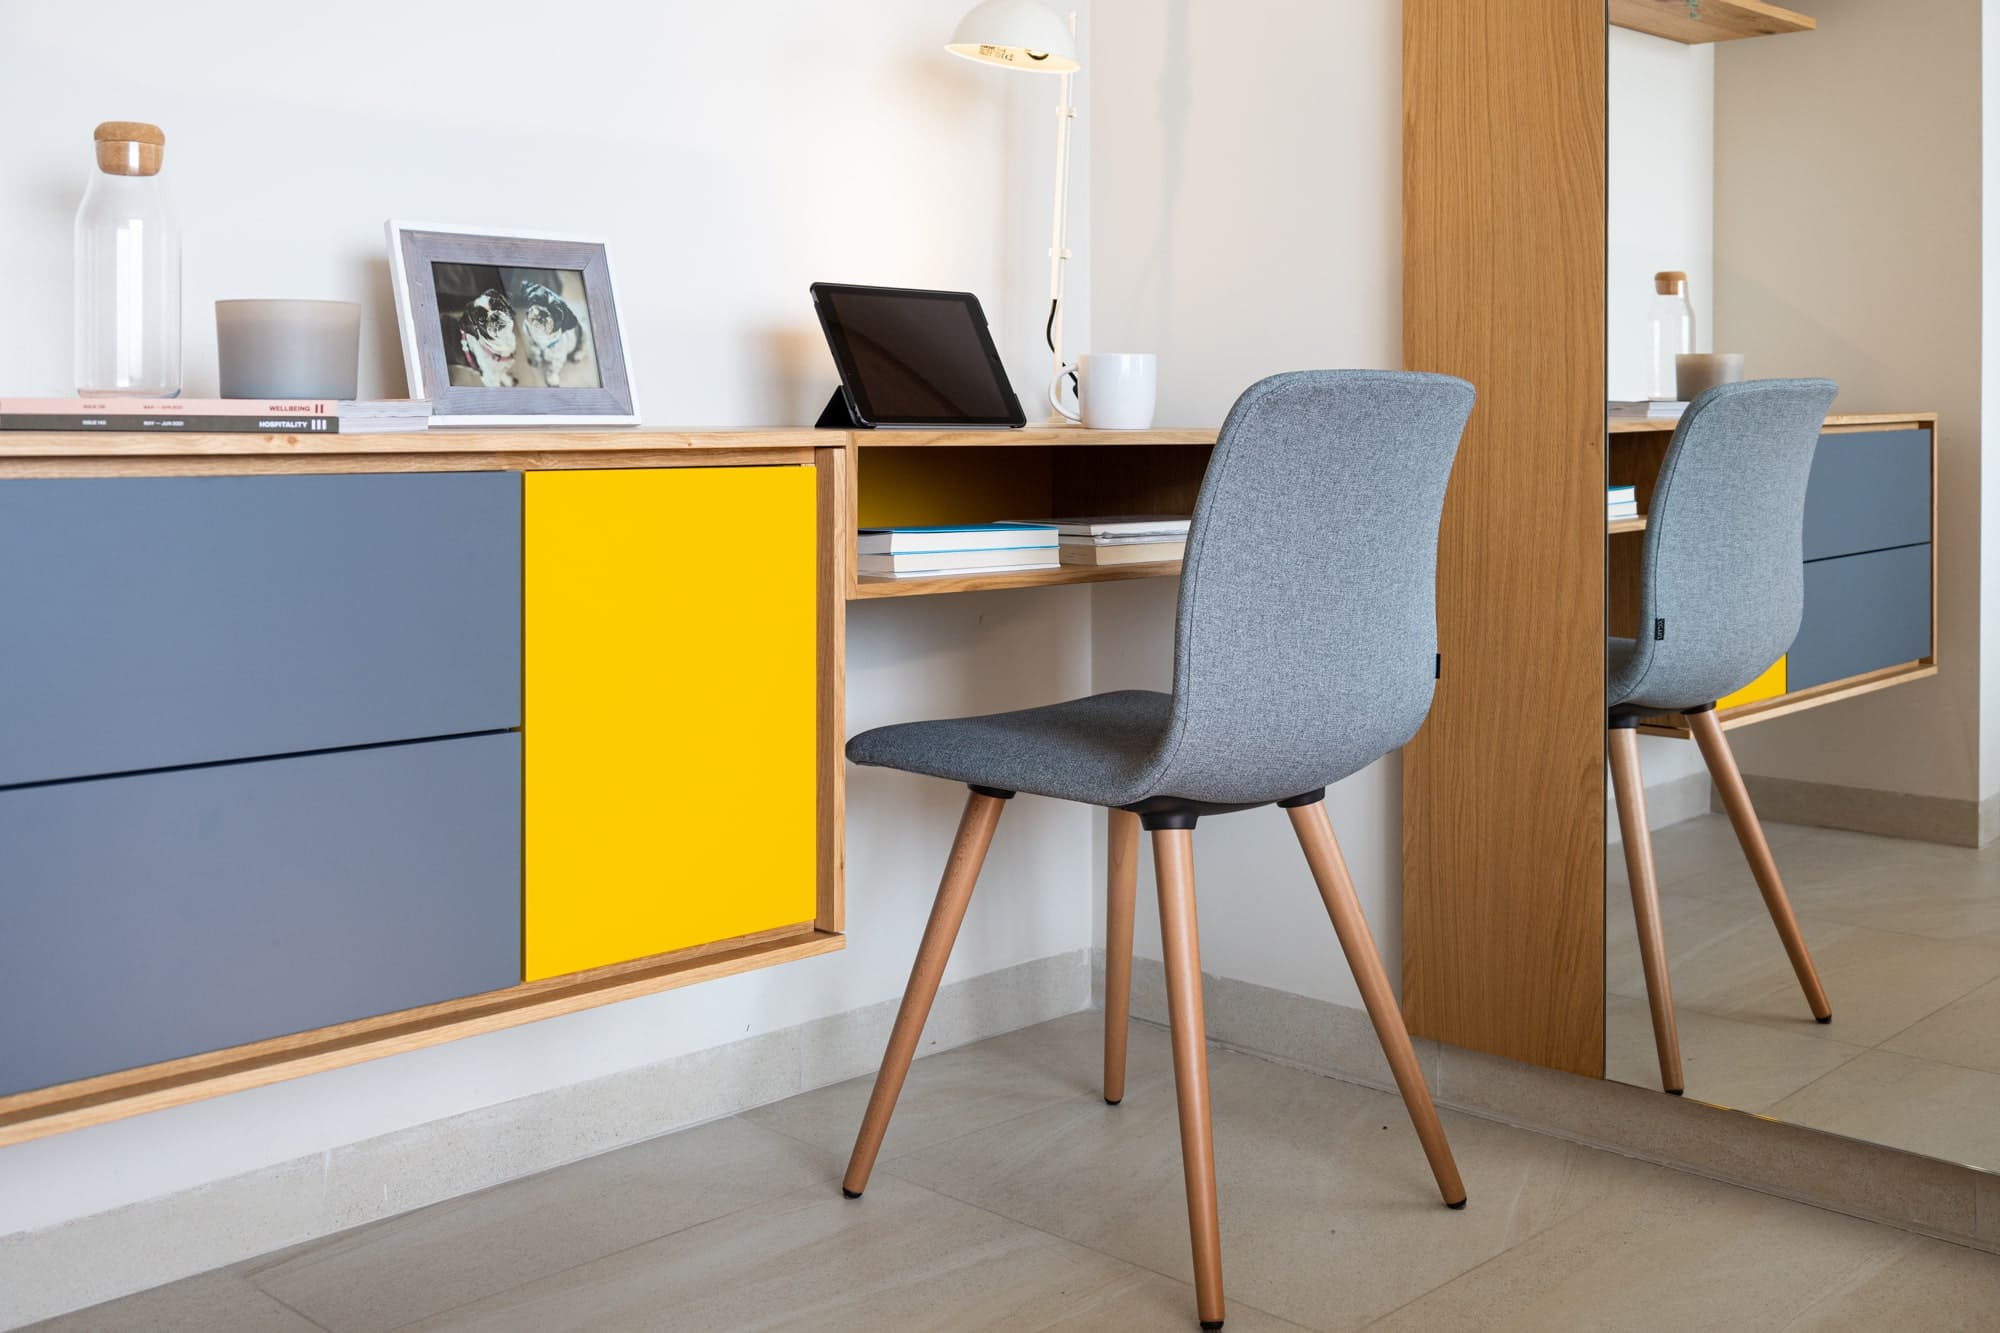 Aprende a escoger los muebles indicados para tu oficina